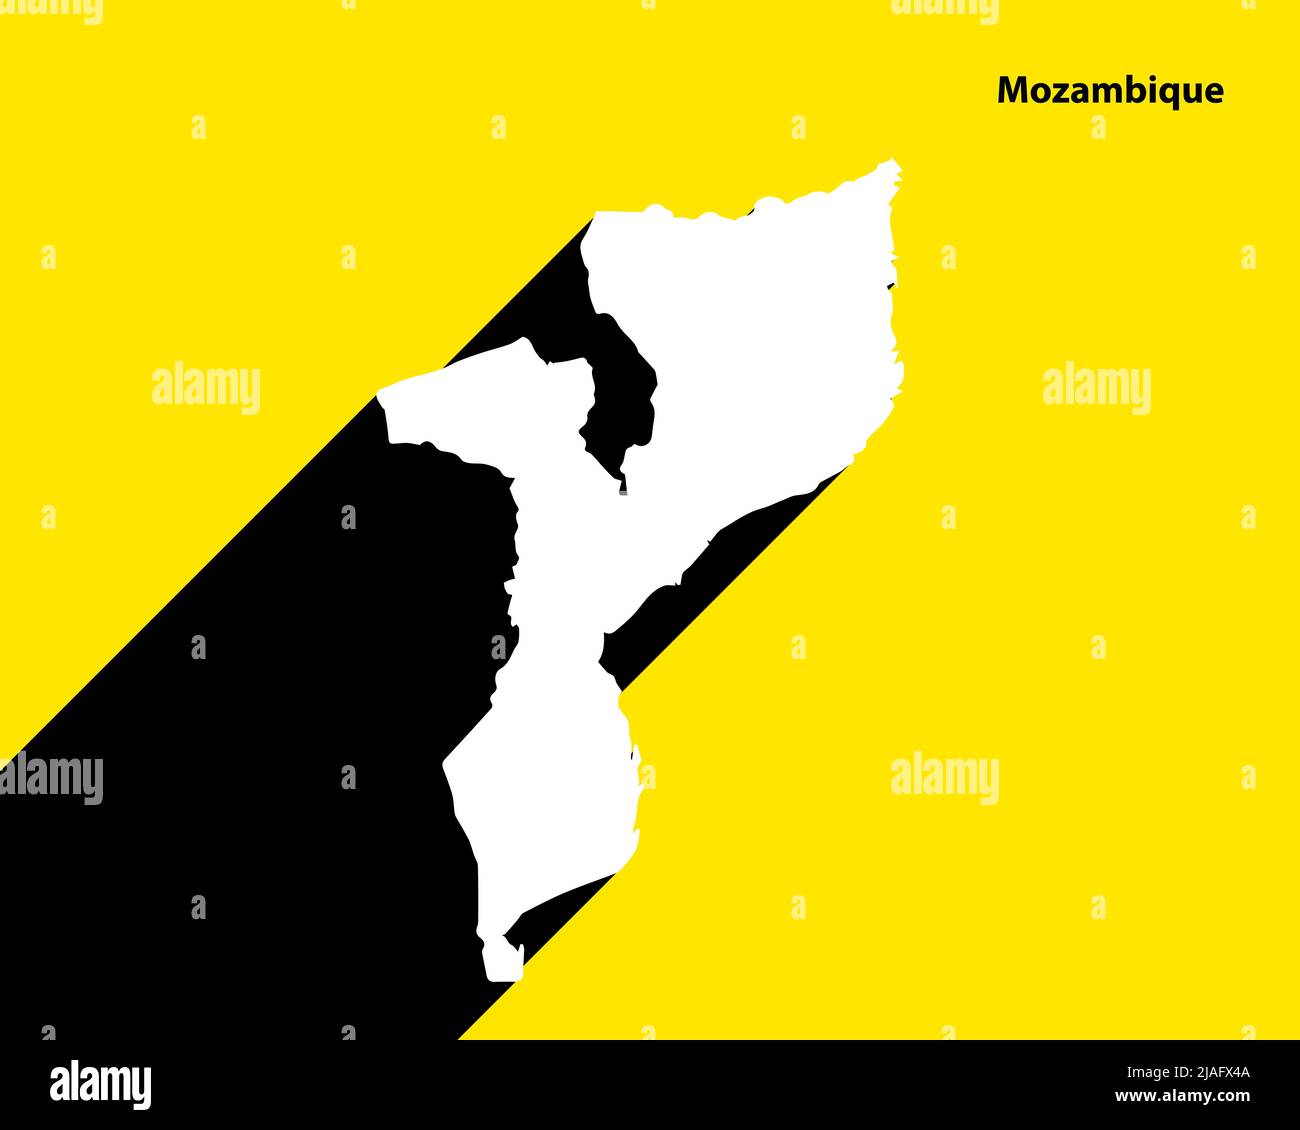 Mappa del Mozambico su poster retrò con lunga ombra. Segno vintage facile da modificare, manipolare, ridimensionare o colorare. Illustrazione Vettoriale